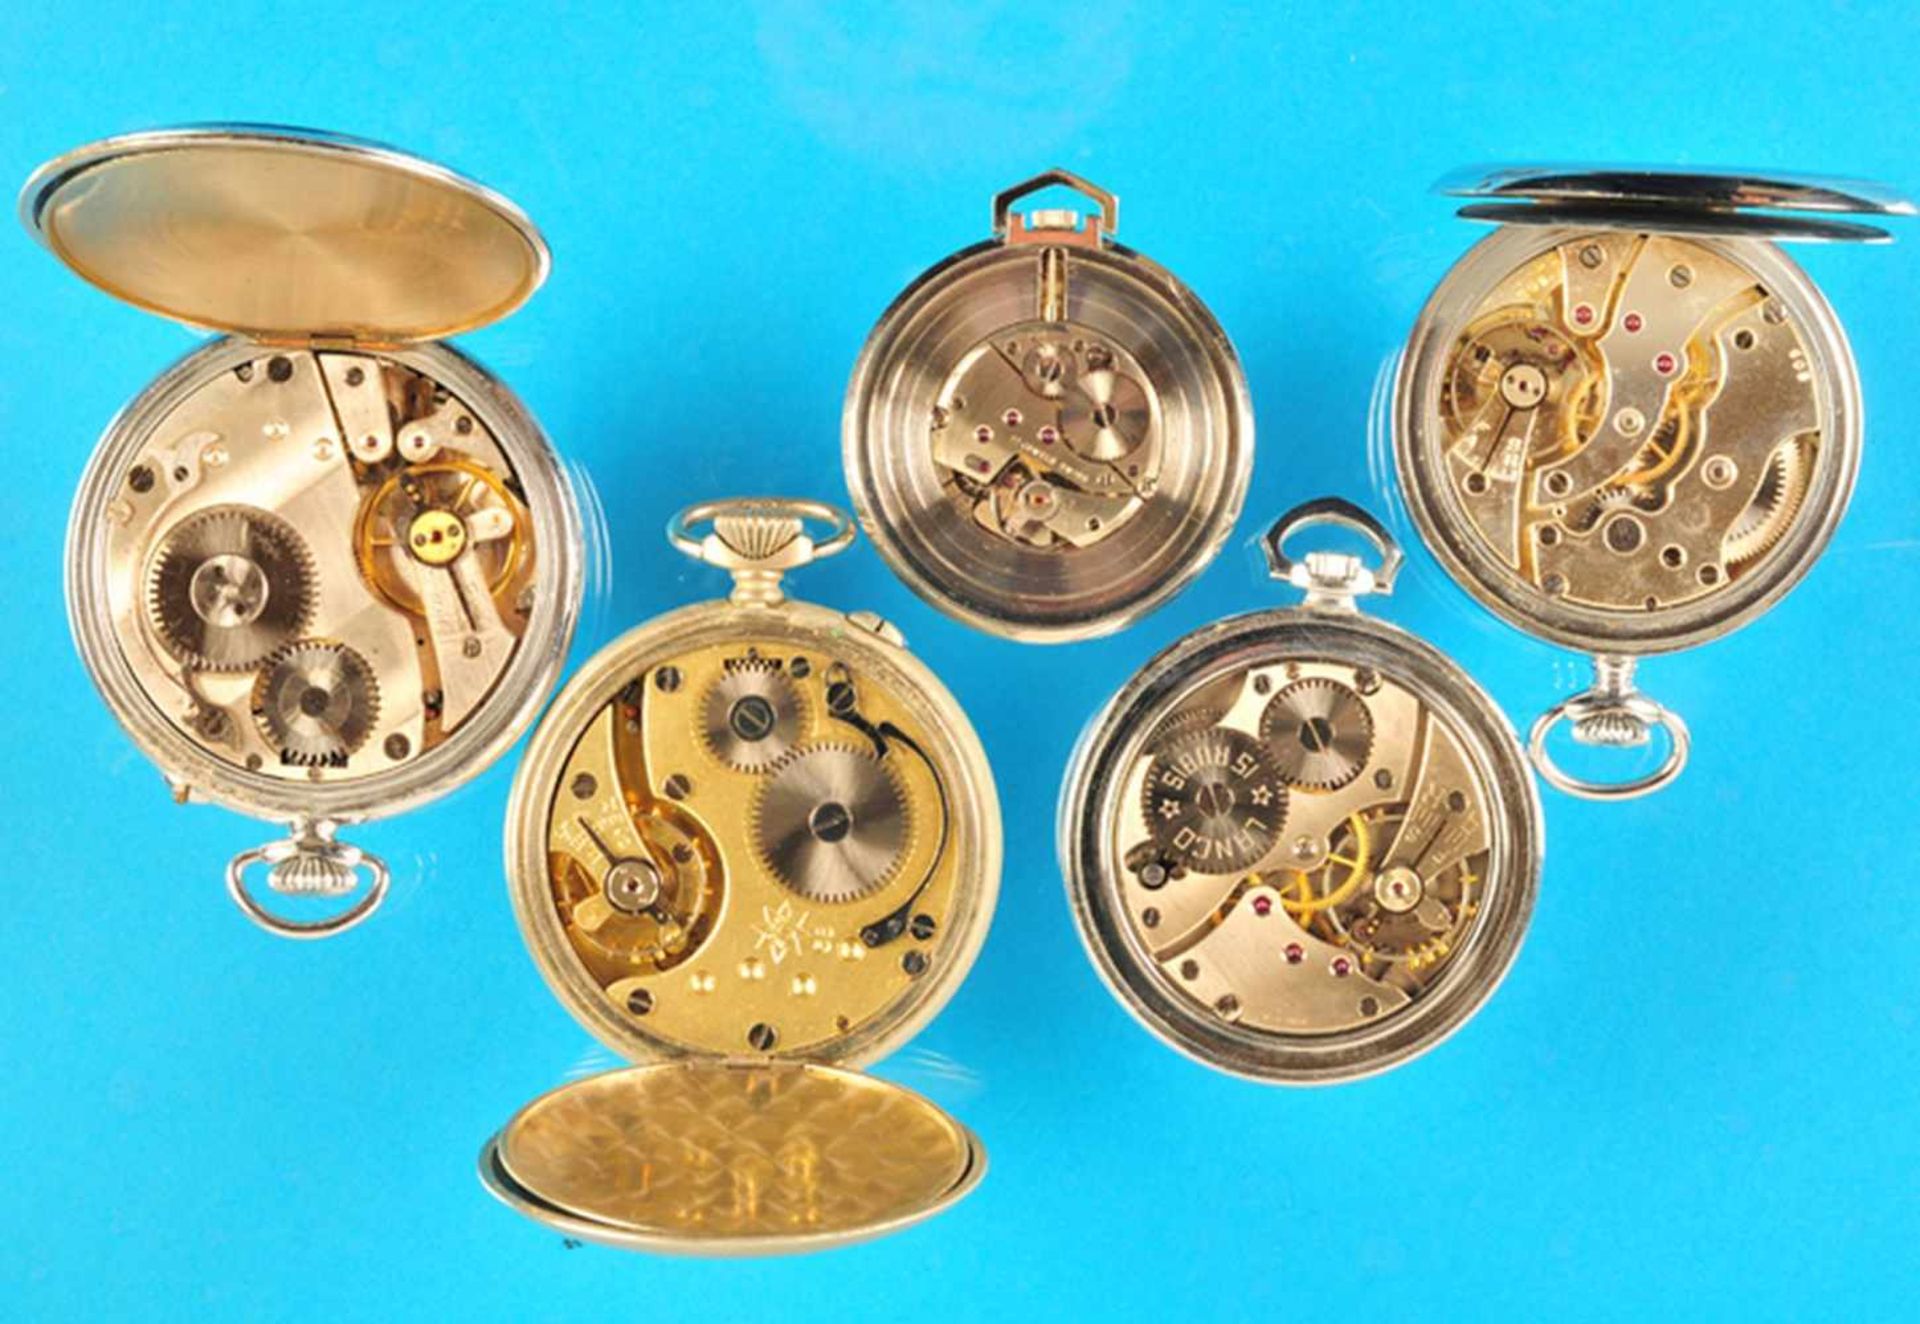 Bundle with 5 metal pocket watchesKonvolut mit 5 Metall-Taschenuhren, 1 Regulateur, 1 Junghans, 1 - Bild 2 aus 2